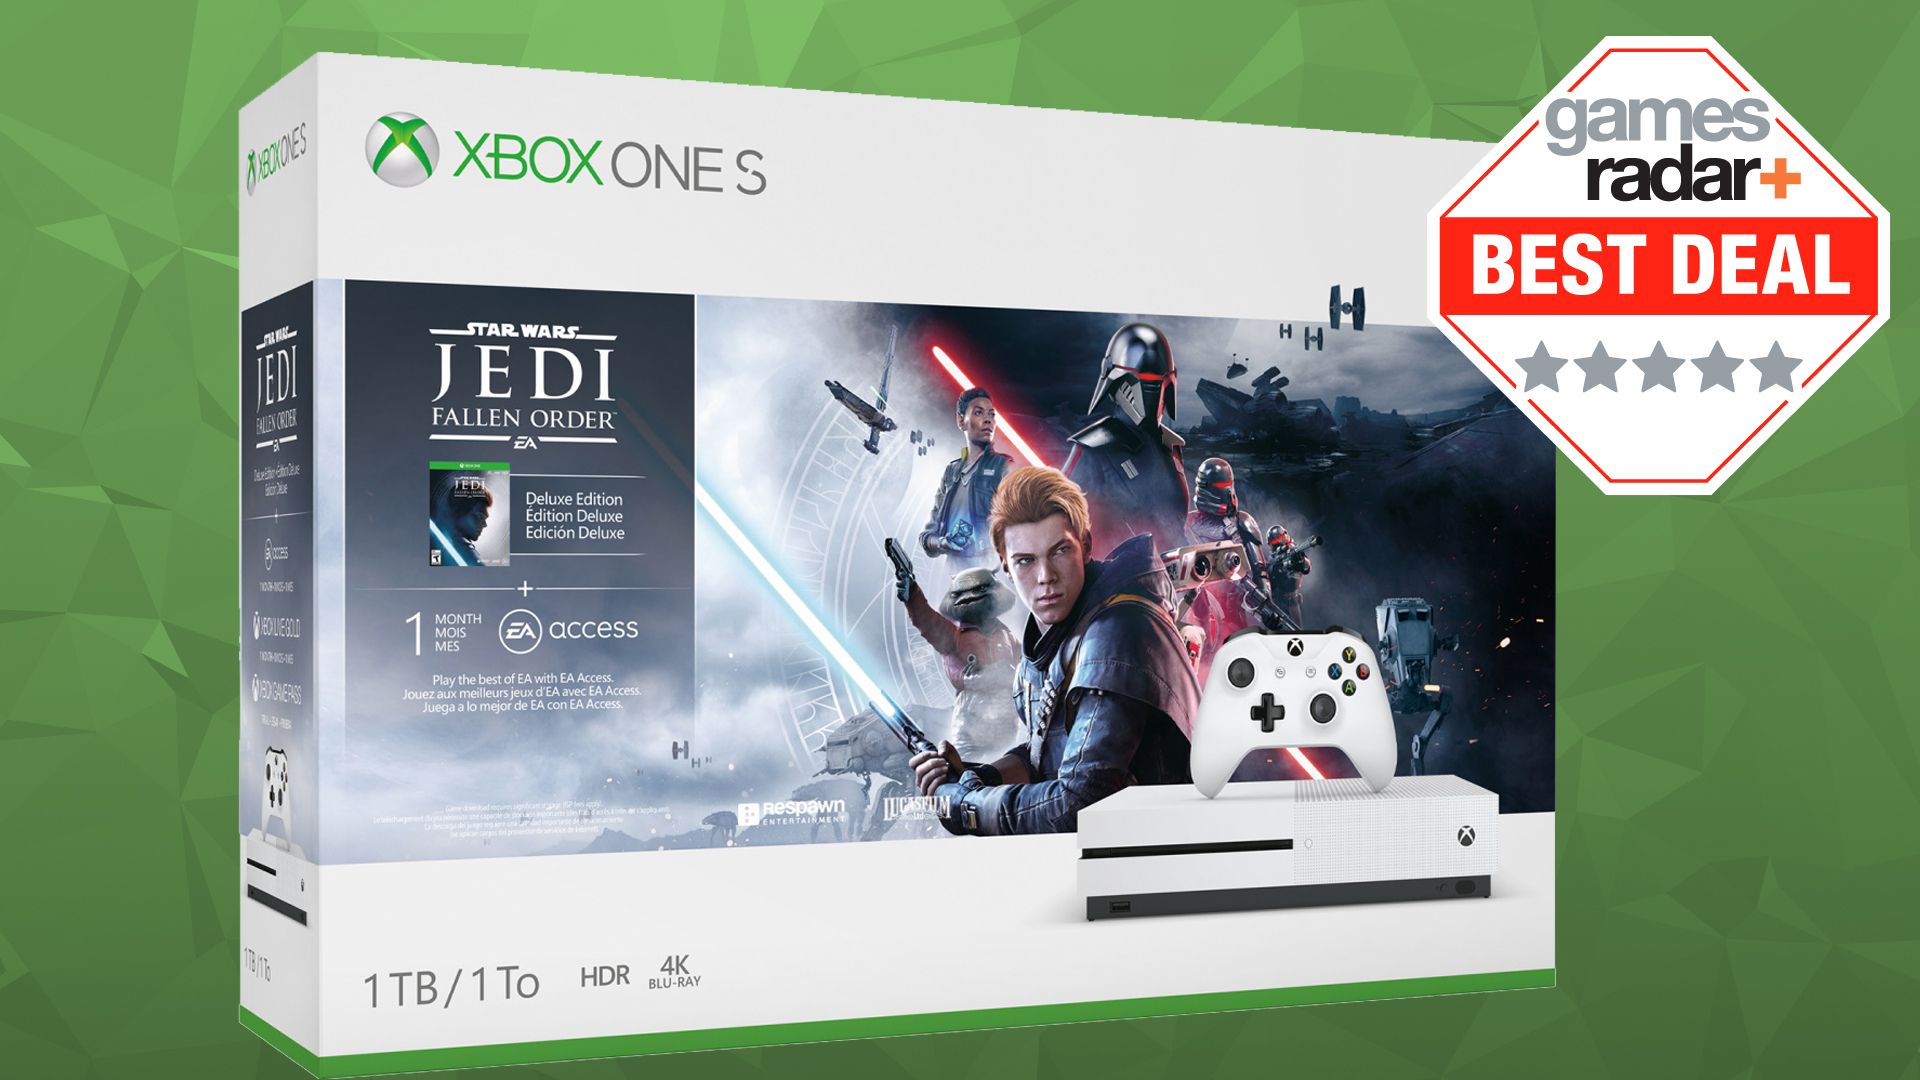 Xbox order. Jedi игры Xbox. Джедай Xbox. Star Wars Jedi: Fallen order Xbox one диск. Xbox Star Wars Jedi: Survivor коробка.